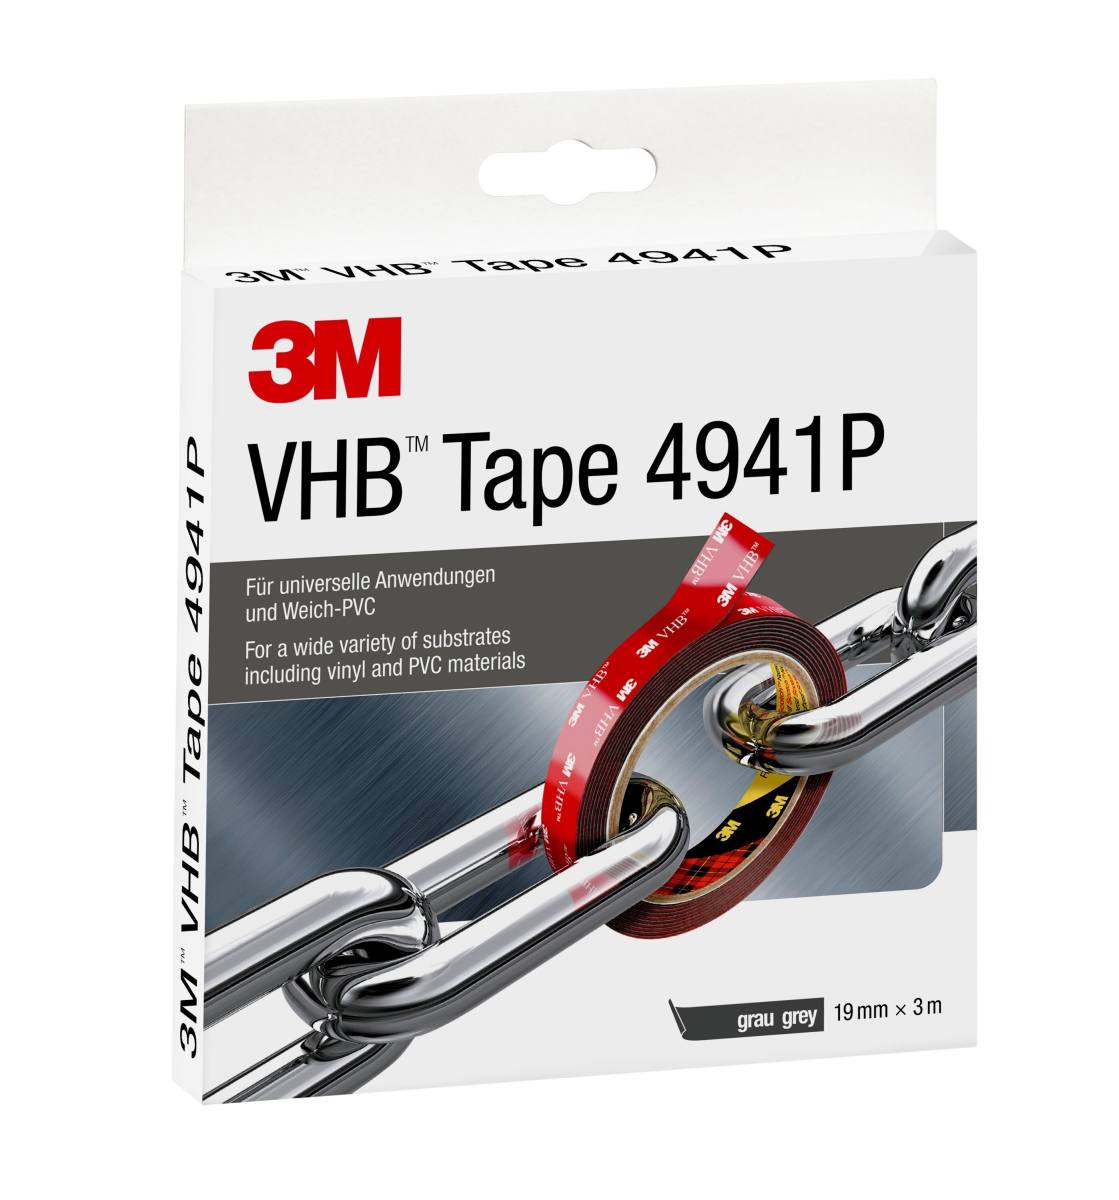 3M VHB adhesive tape 4941P, gray, 19 mm x 3 m, 1.1 mm